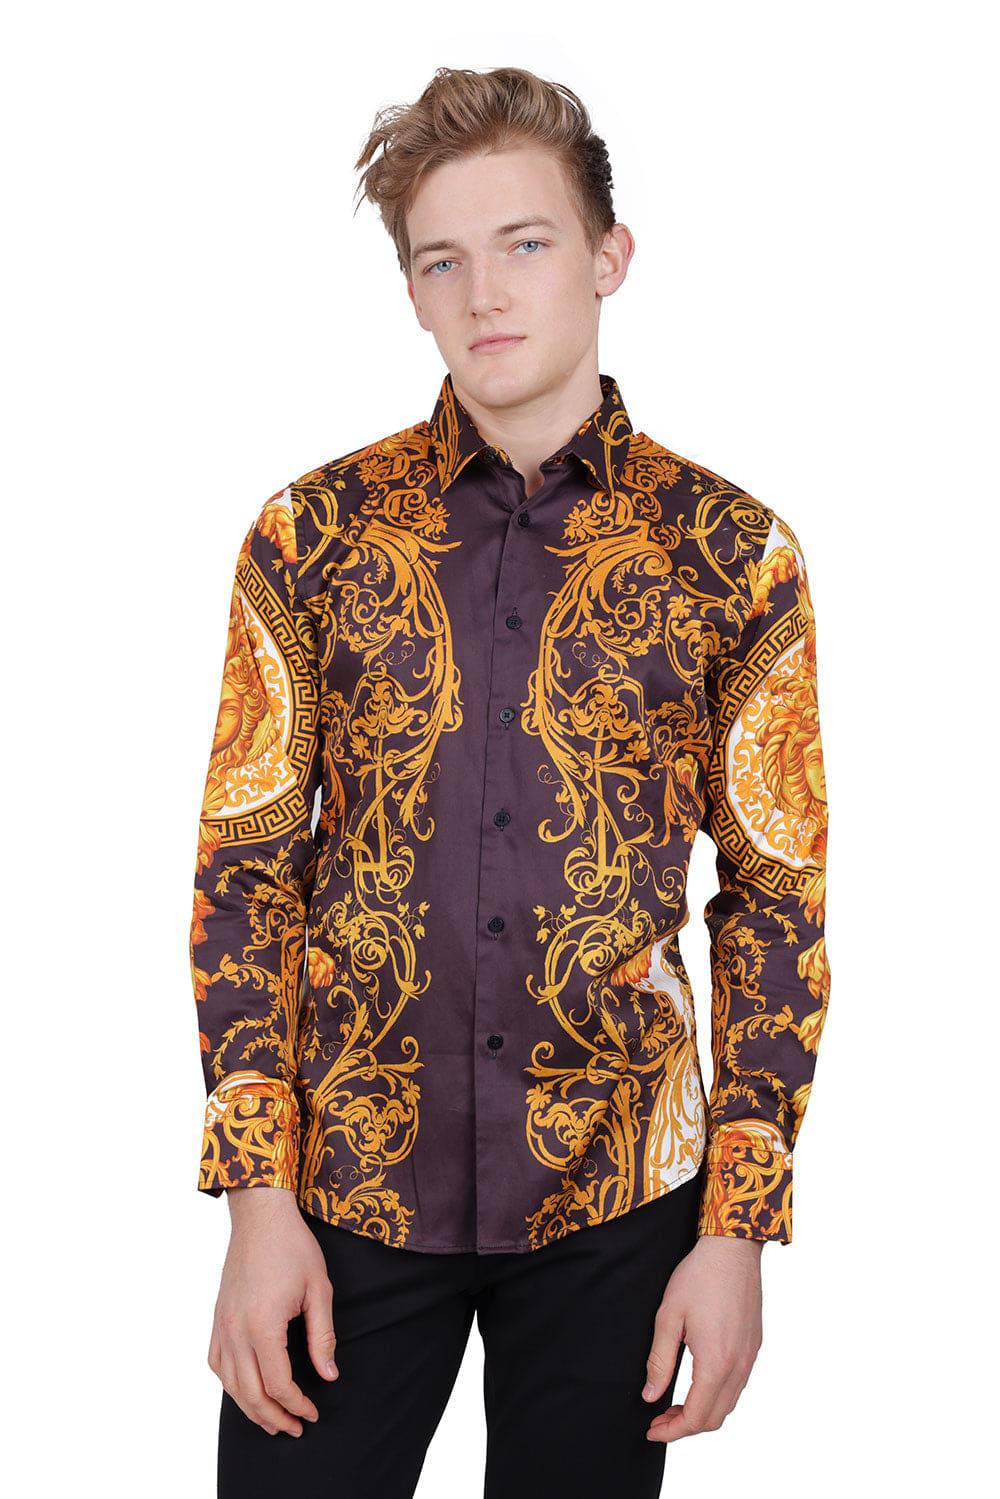 BARABAS Men Medusa Floral Print Design Button Down Luxury Shirt SPR265 Brown